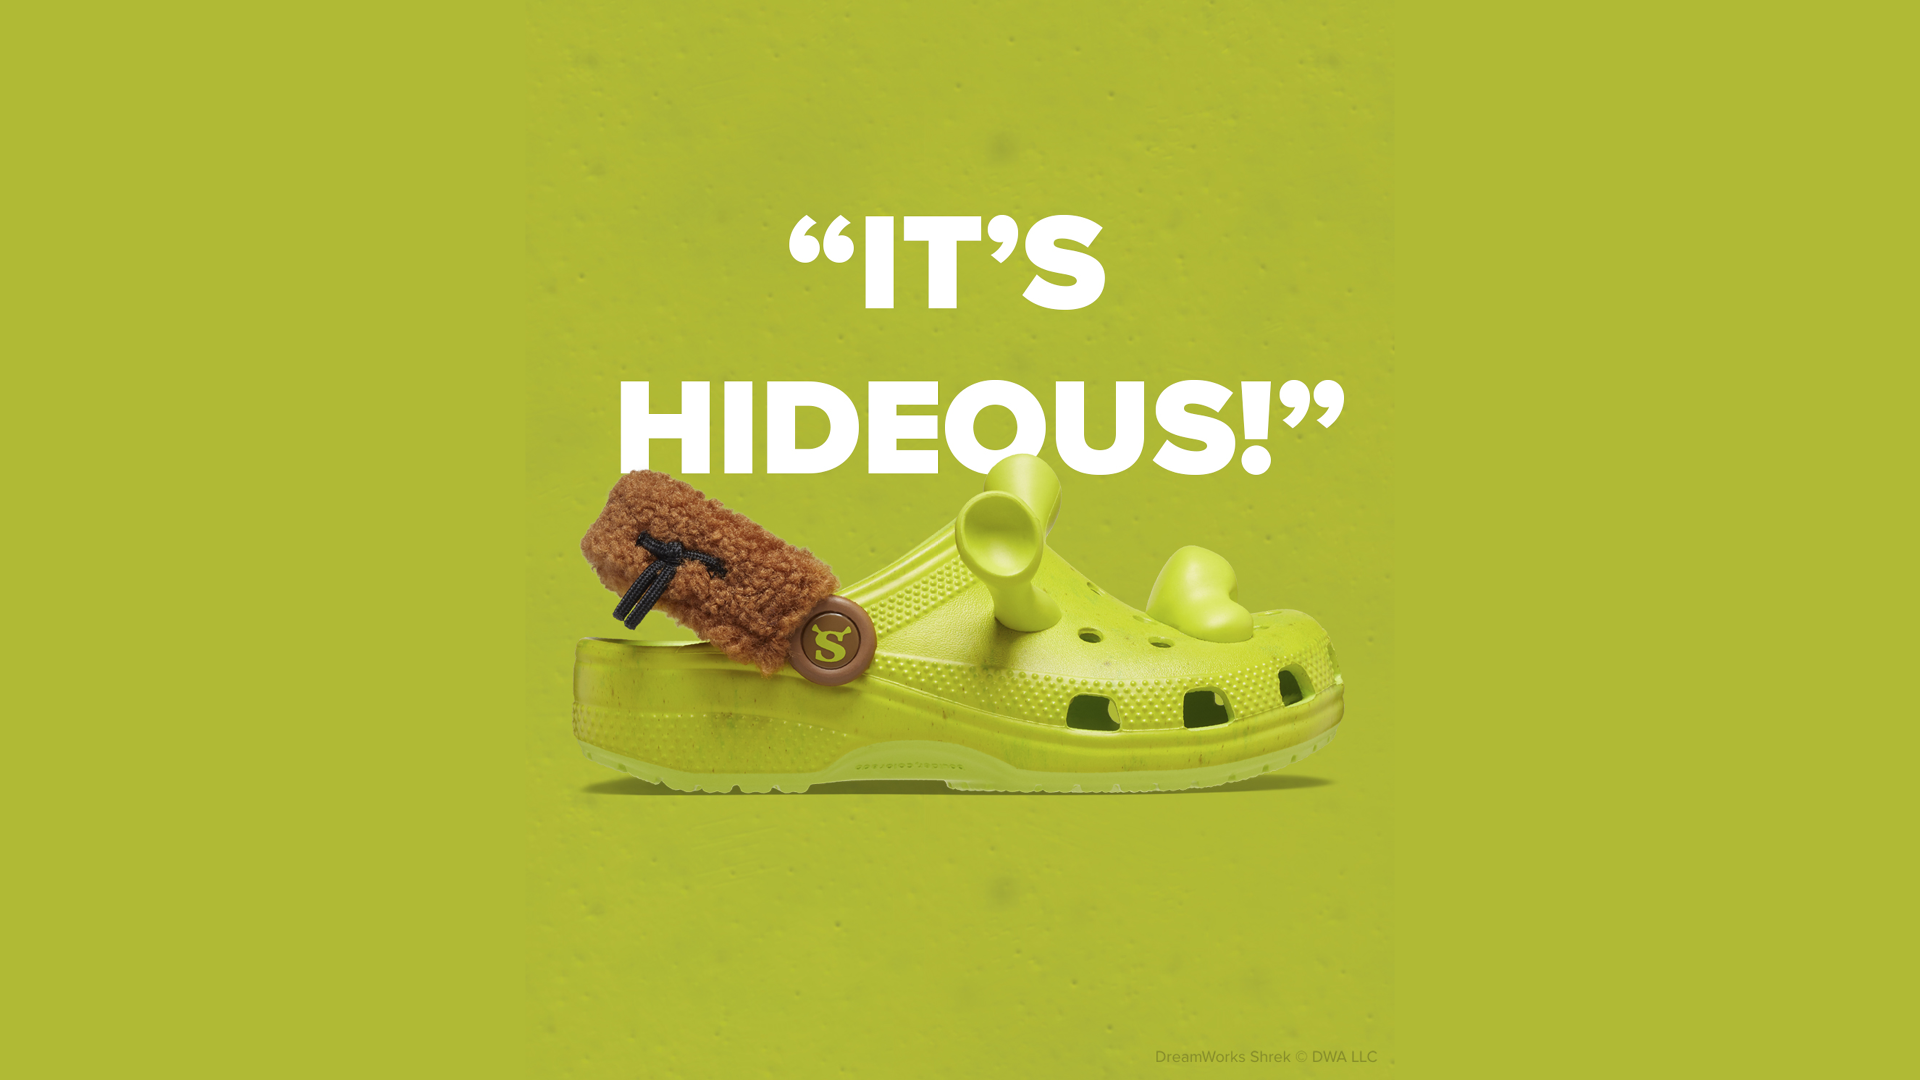 DreamWorks Shrek x Crocs Classic Clog - Little Kid / Big Kid